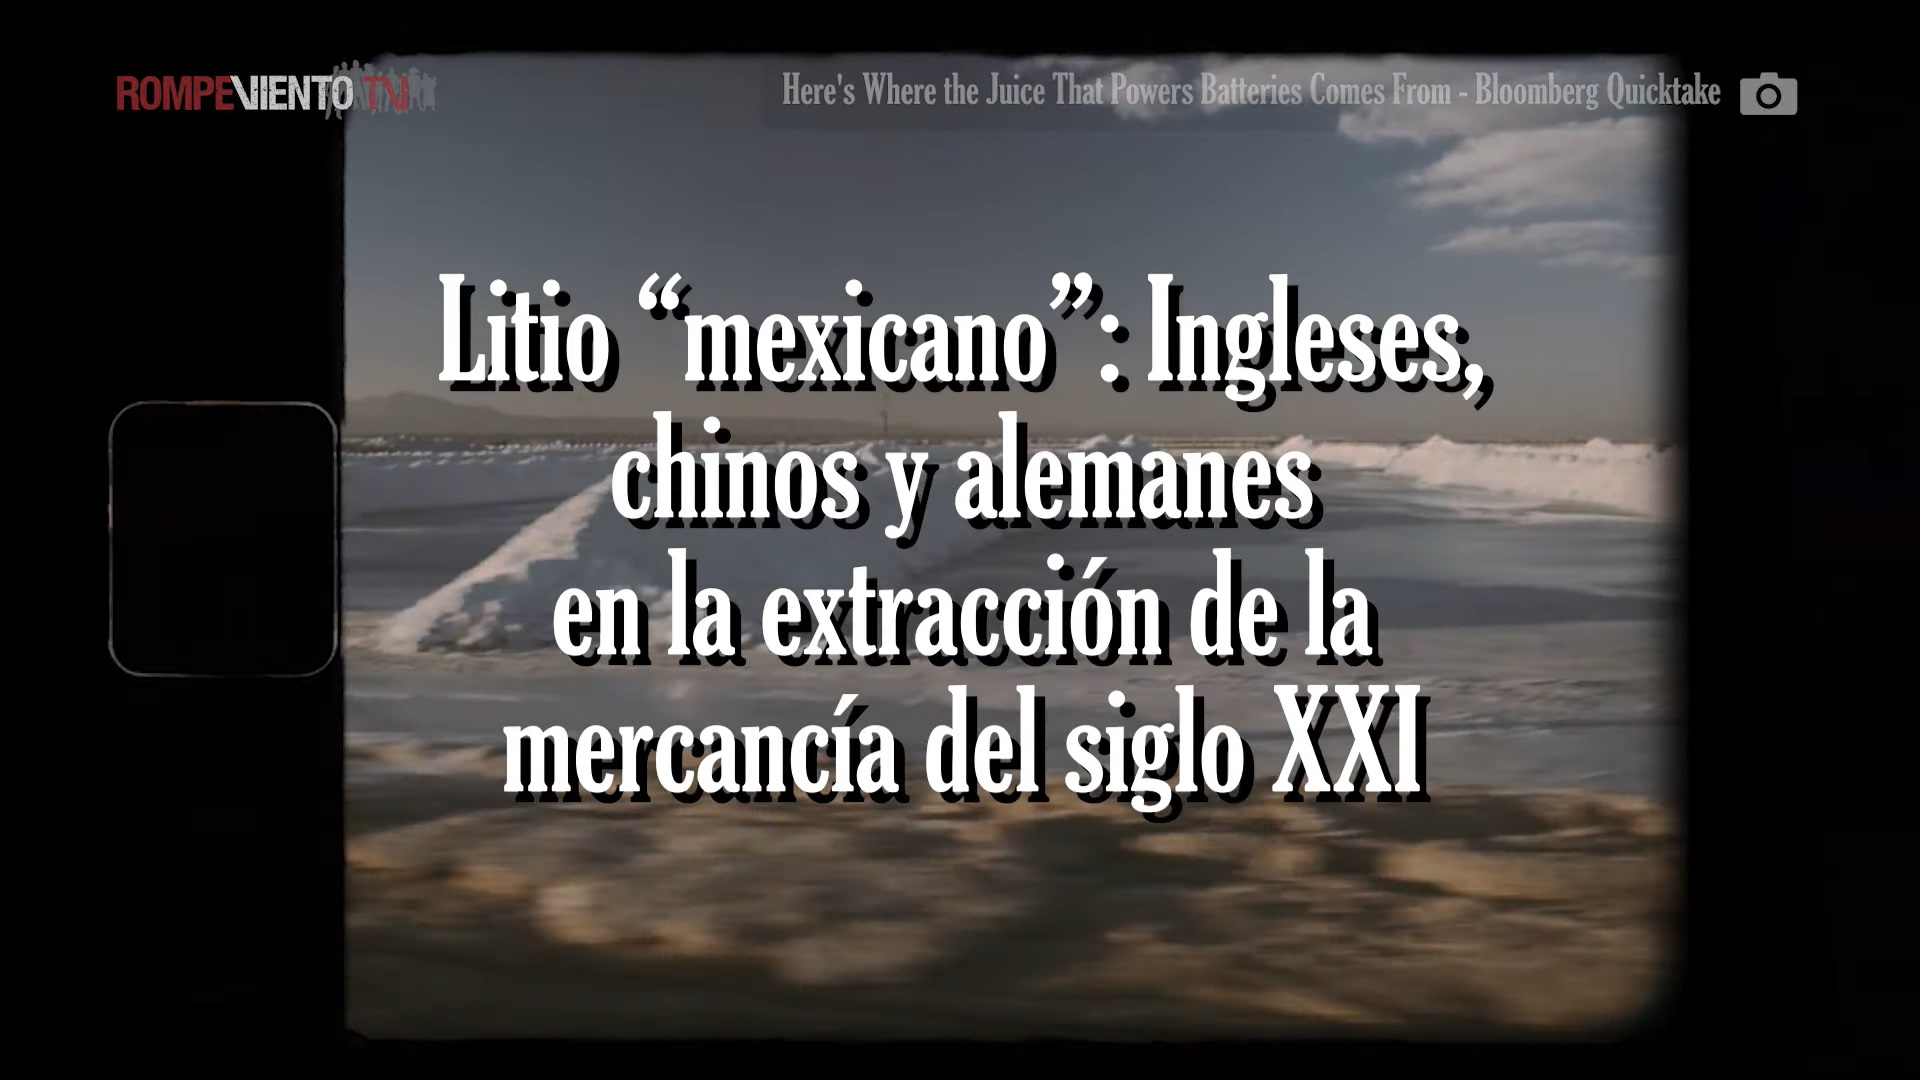 Litio “mexicano”: ingleses, chinos y alemanes en la extracción de la mercancía del siglo XXI